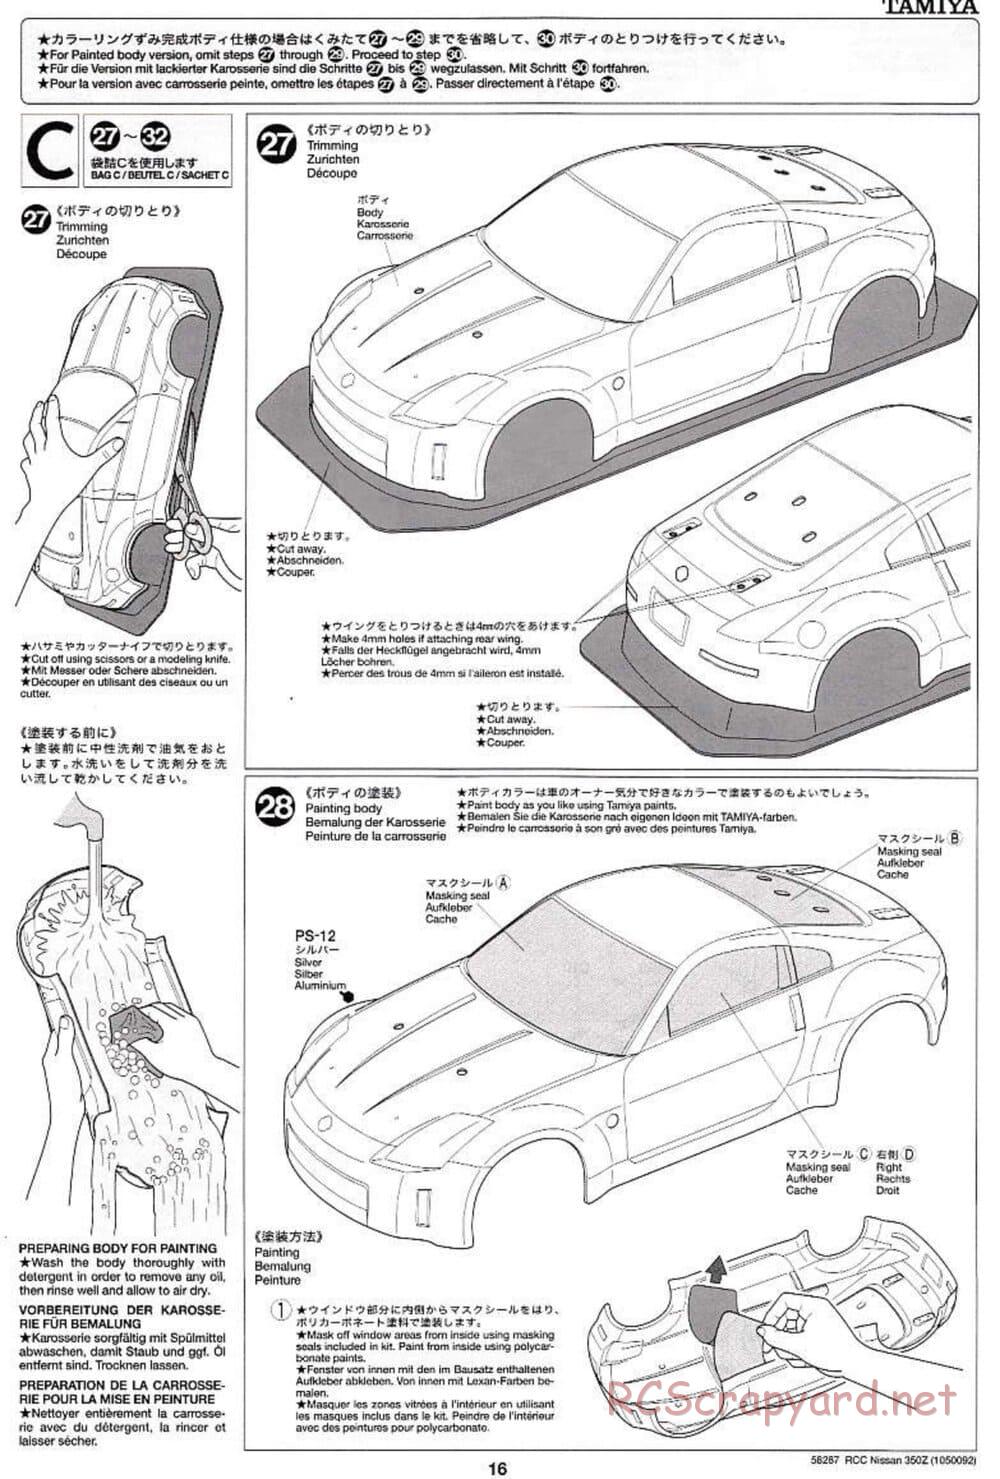 Tamiya - Nissan 350Z - TL-01 Chassis - Manual - Page 16